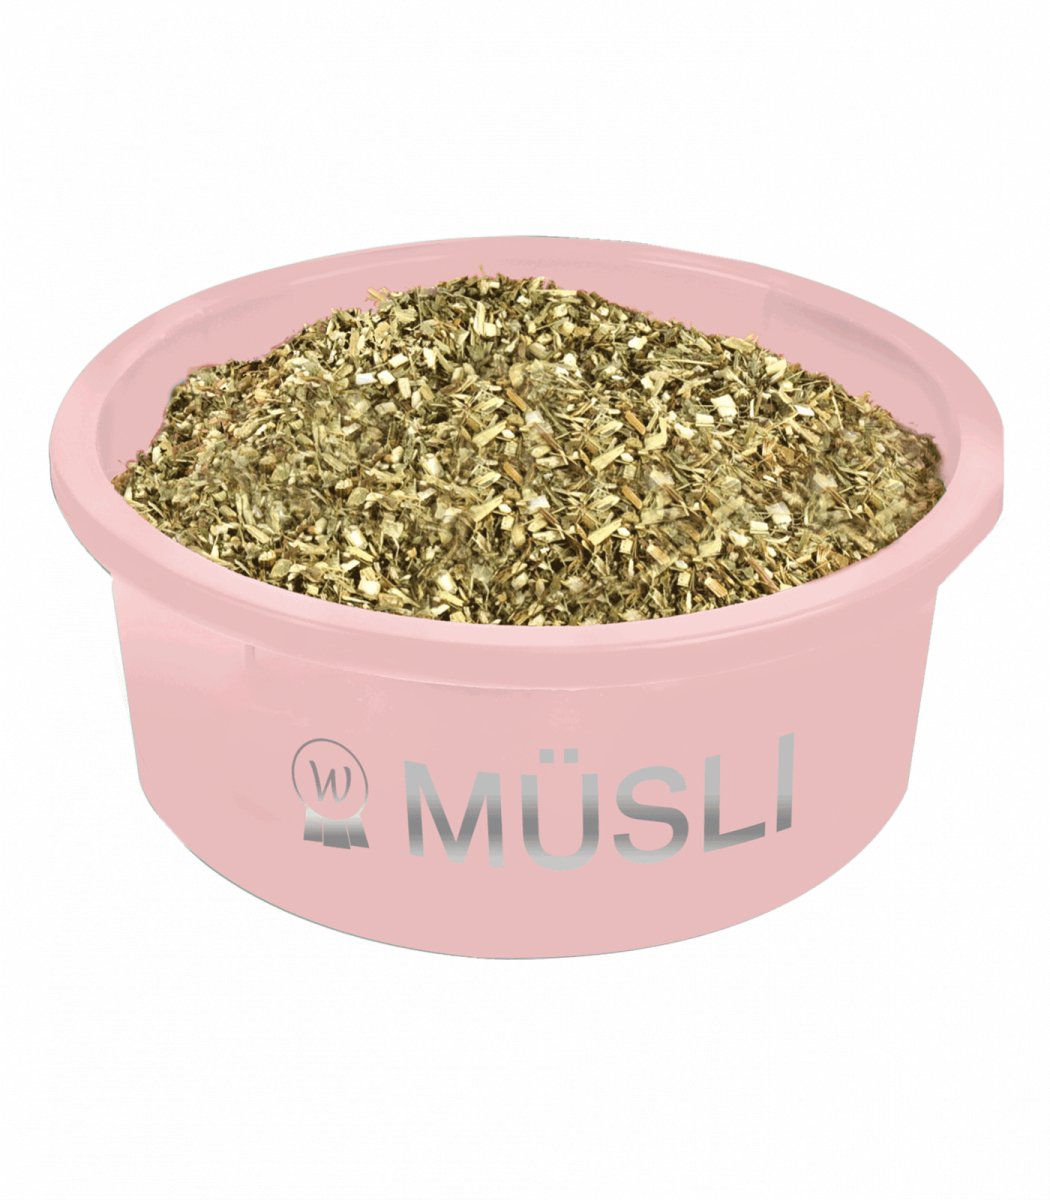 Billede af Muesli Bowl, linnea pink, 5 L hos animondo